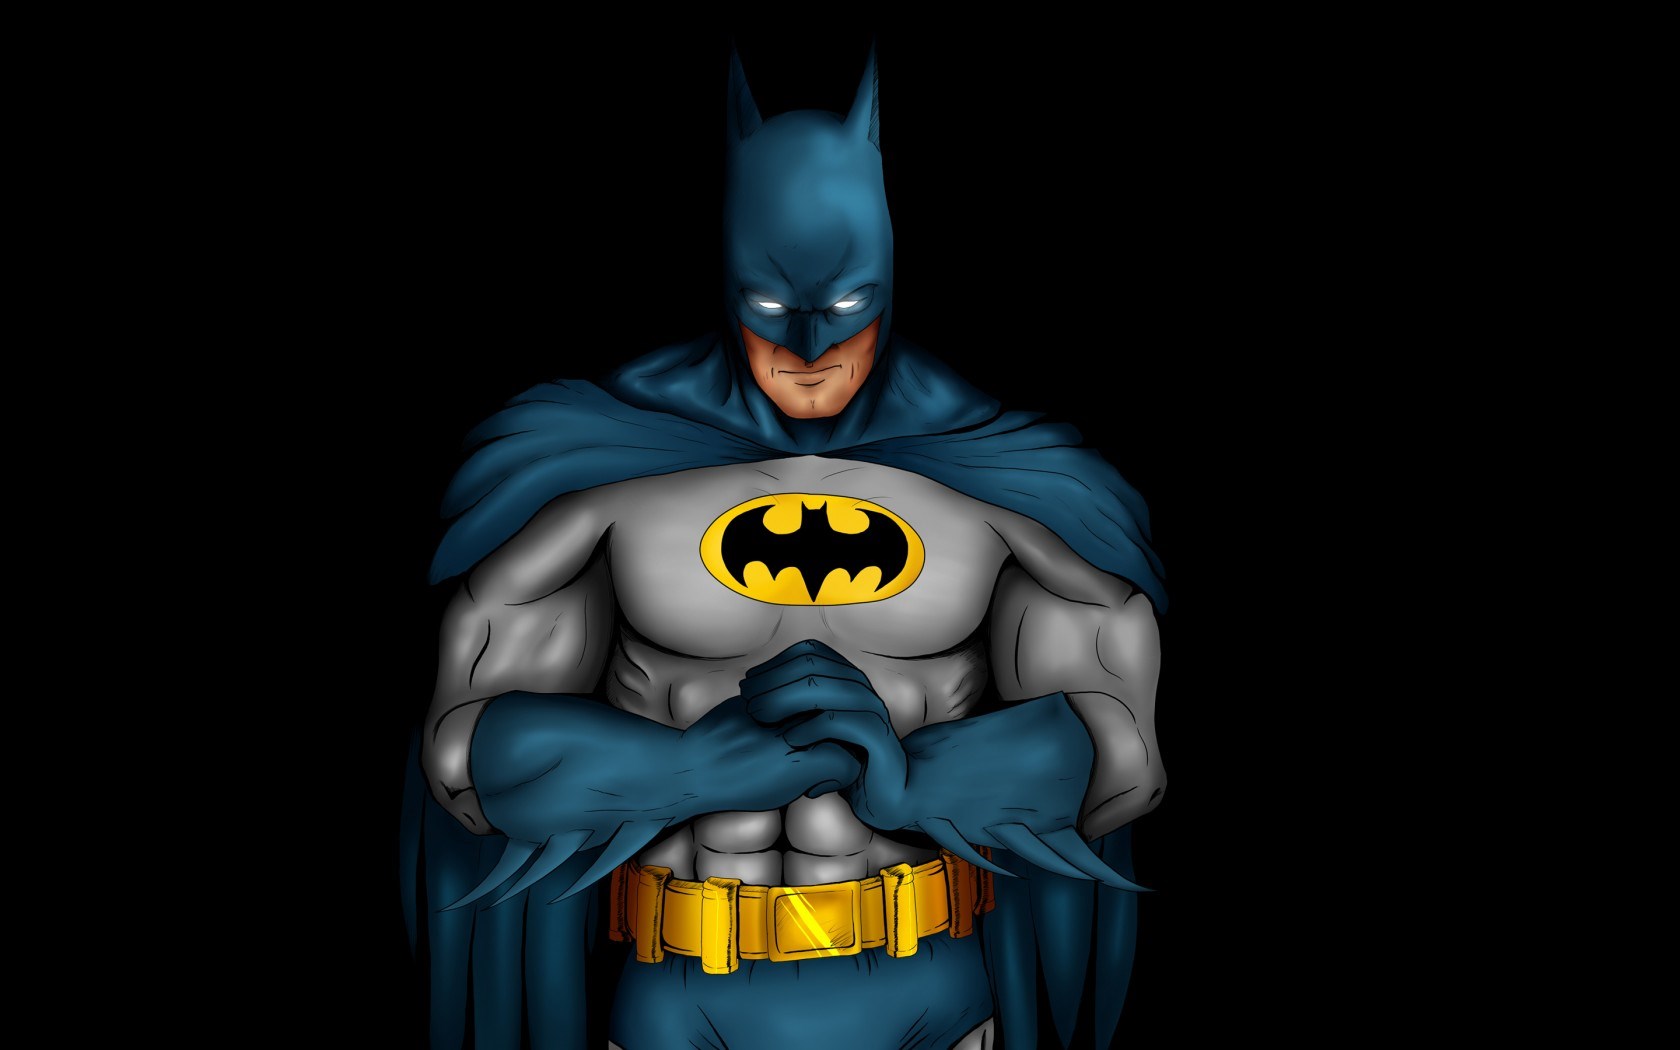 Batman Comics Character Cartoon wallpaper Best HD Wallpapers